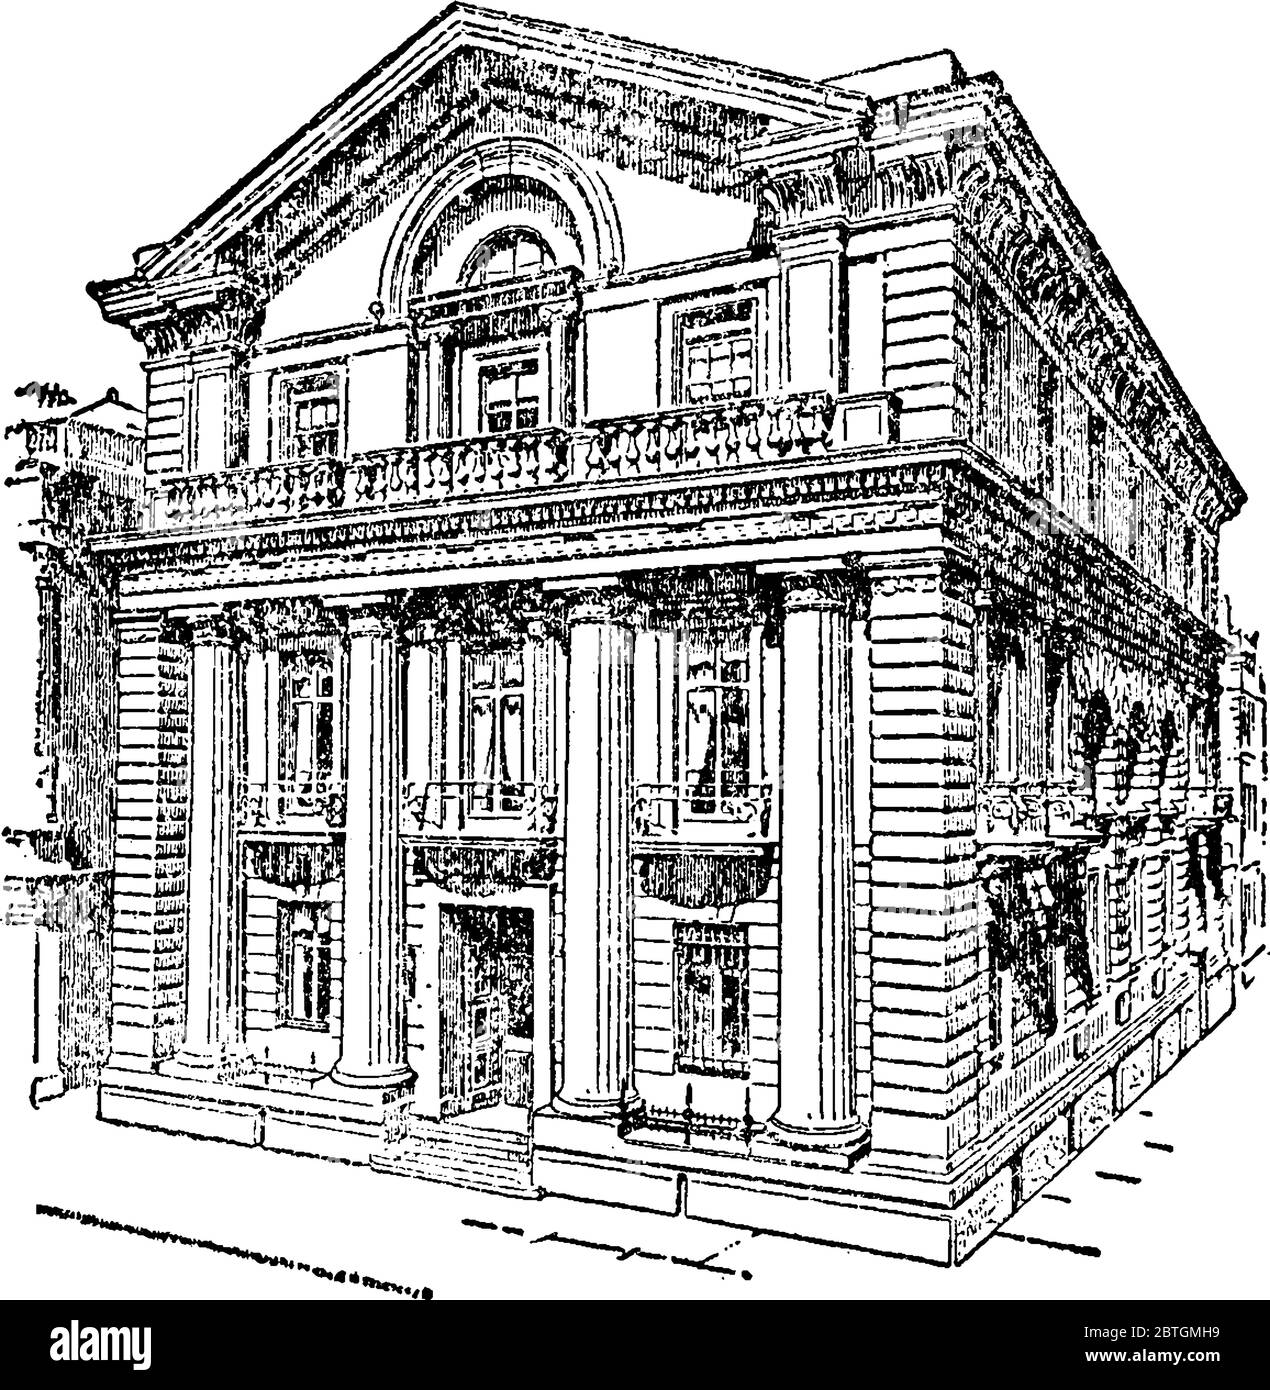 Une représentation typique de la vue de face du grand bâtiment, branche Liverpool de la banque d'Angleterre avec des dessins remarquables, ligne vintage drawin Illustration de Vecteur